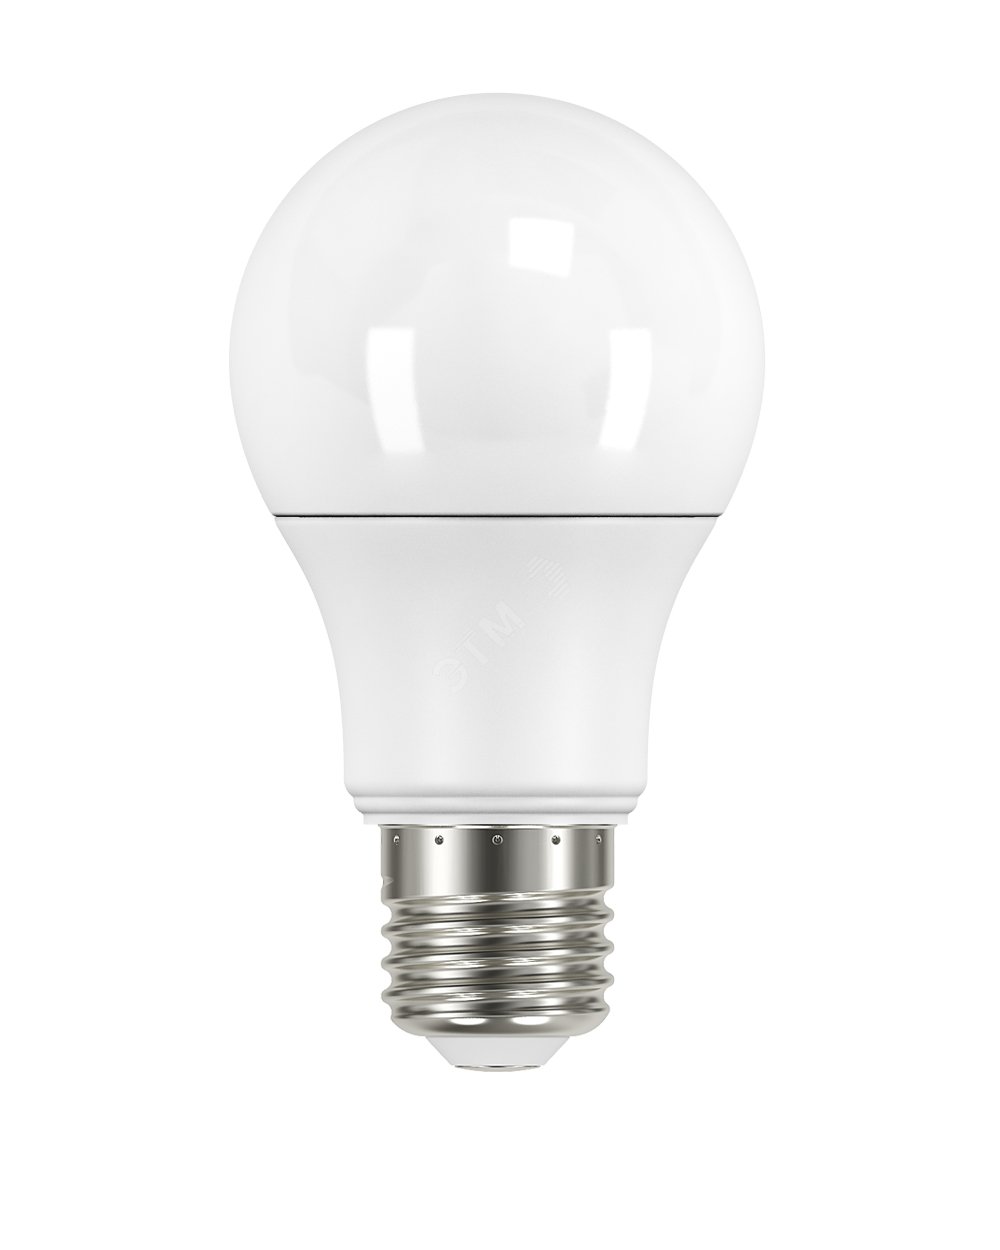 Низковольтная светодиодная лампа местного освещения (МО) 12Вт Е27 4000К 1000Лм 60х125мм 12V AC/DC 902502312 Вартон